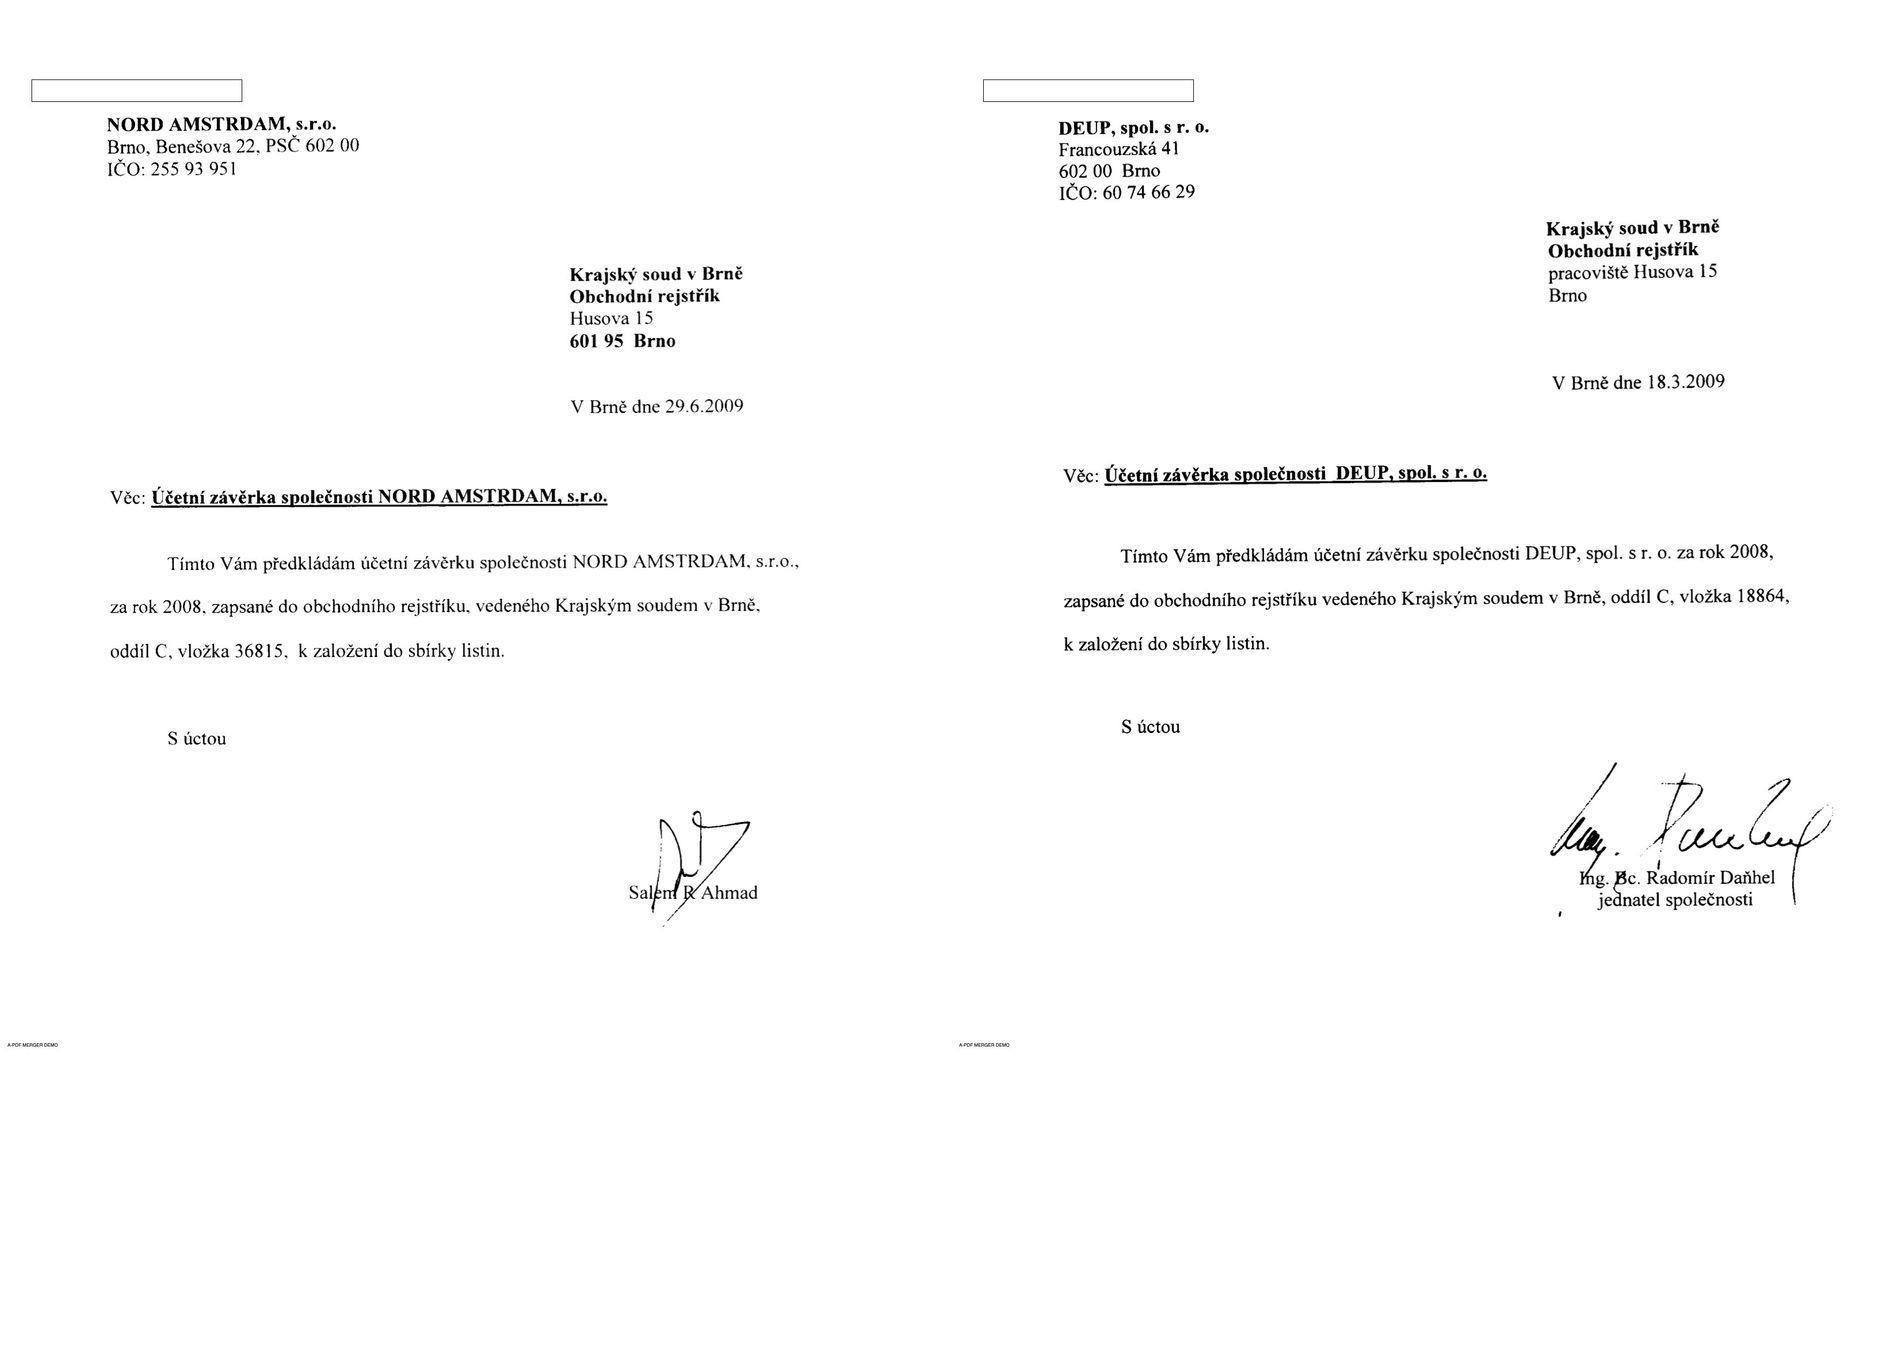 Účetní závěrka Daňhelovy firmy DEUP má stejný krycí list jako účetní závěrka firmy Nord Amstrdam, která okradla stát o stamiliony.